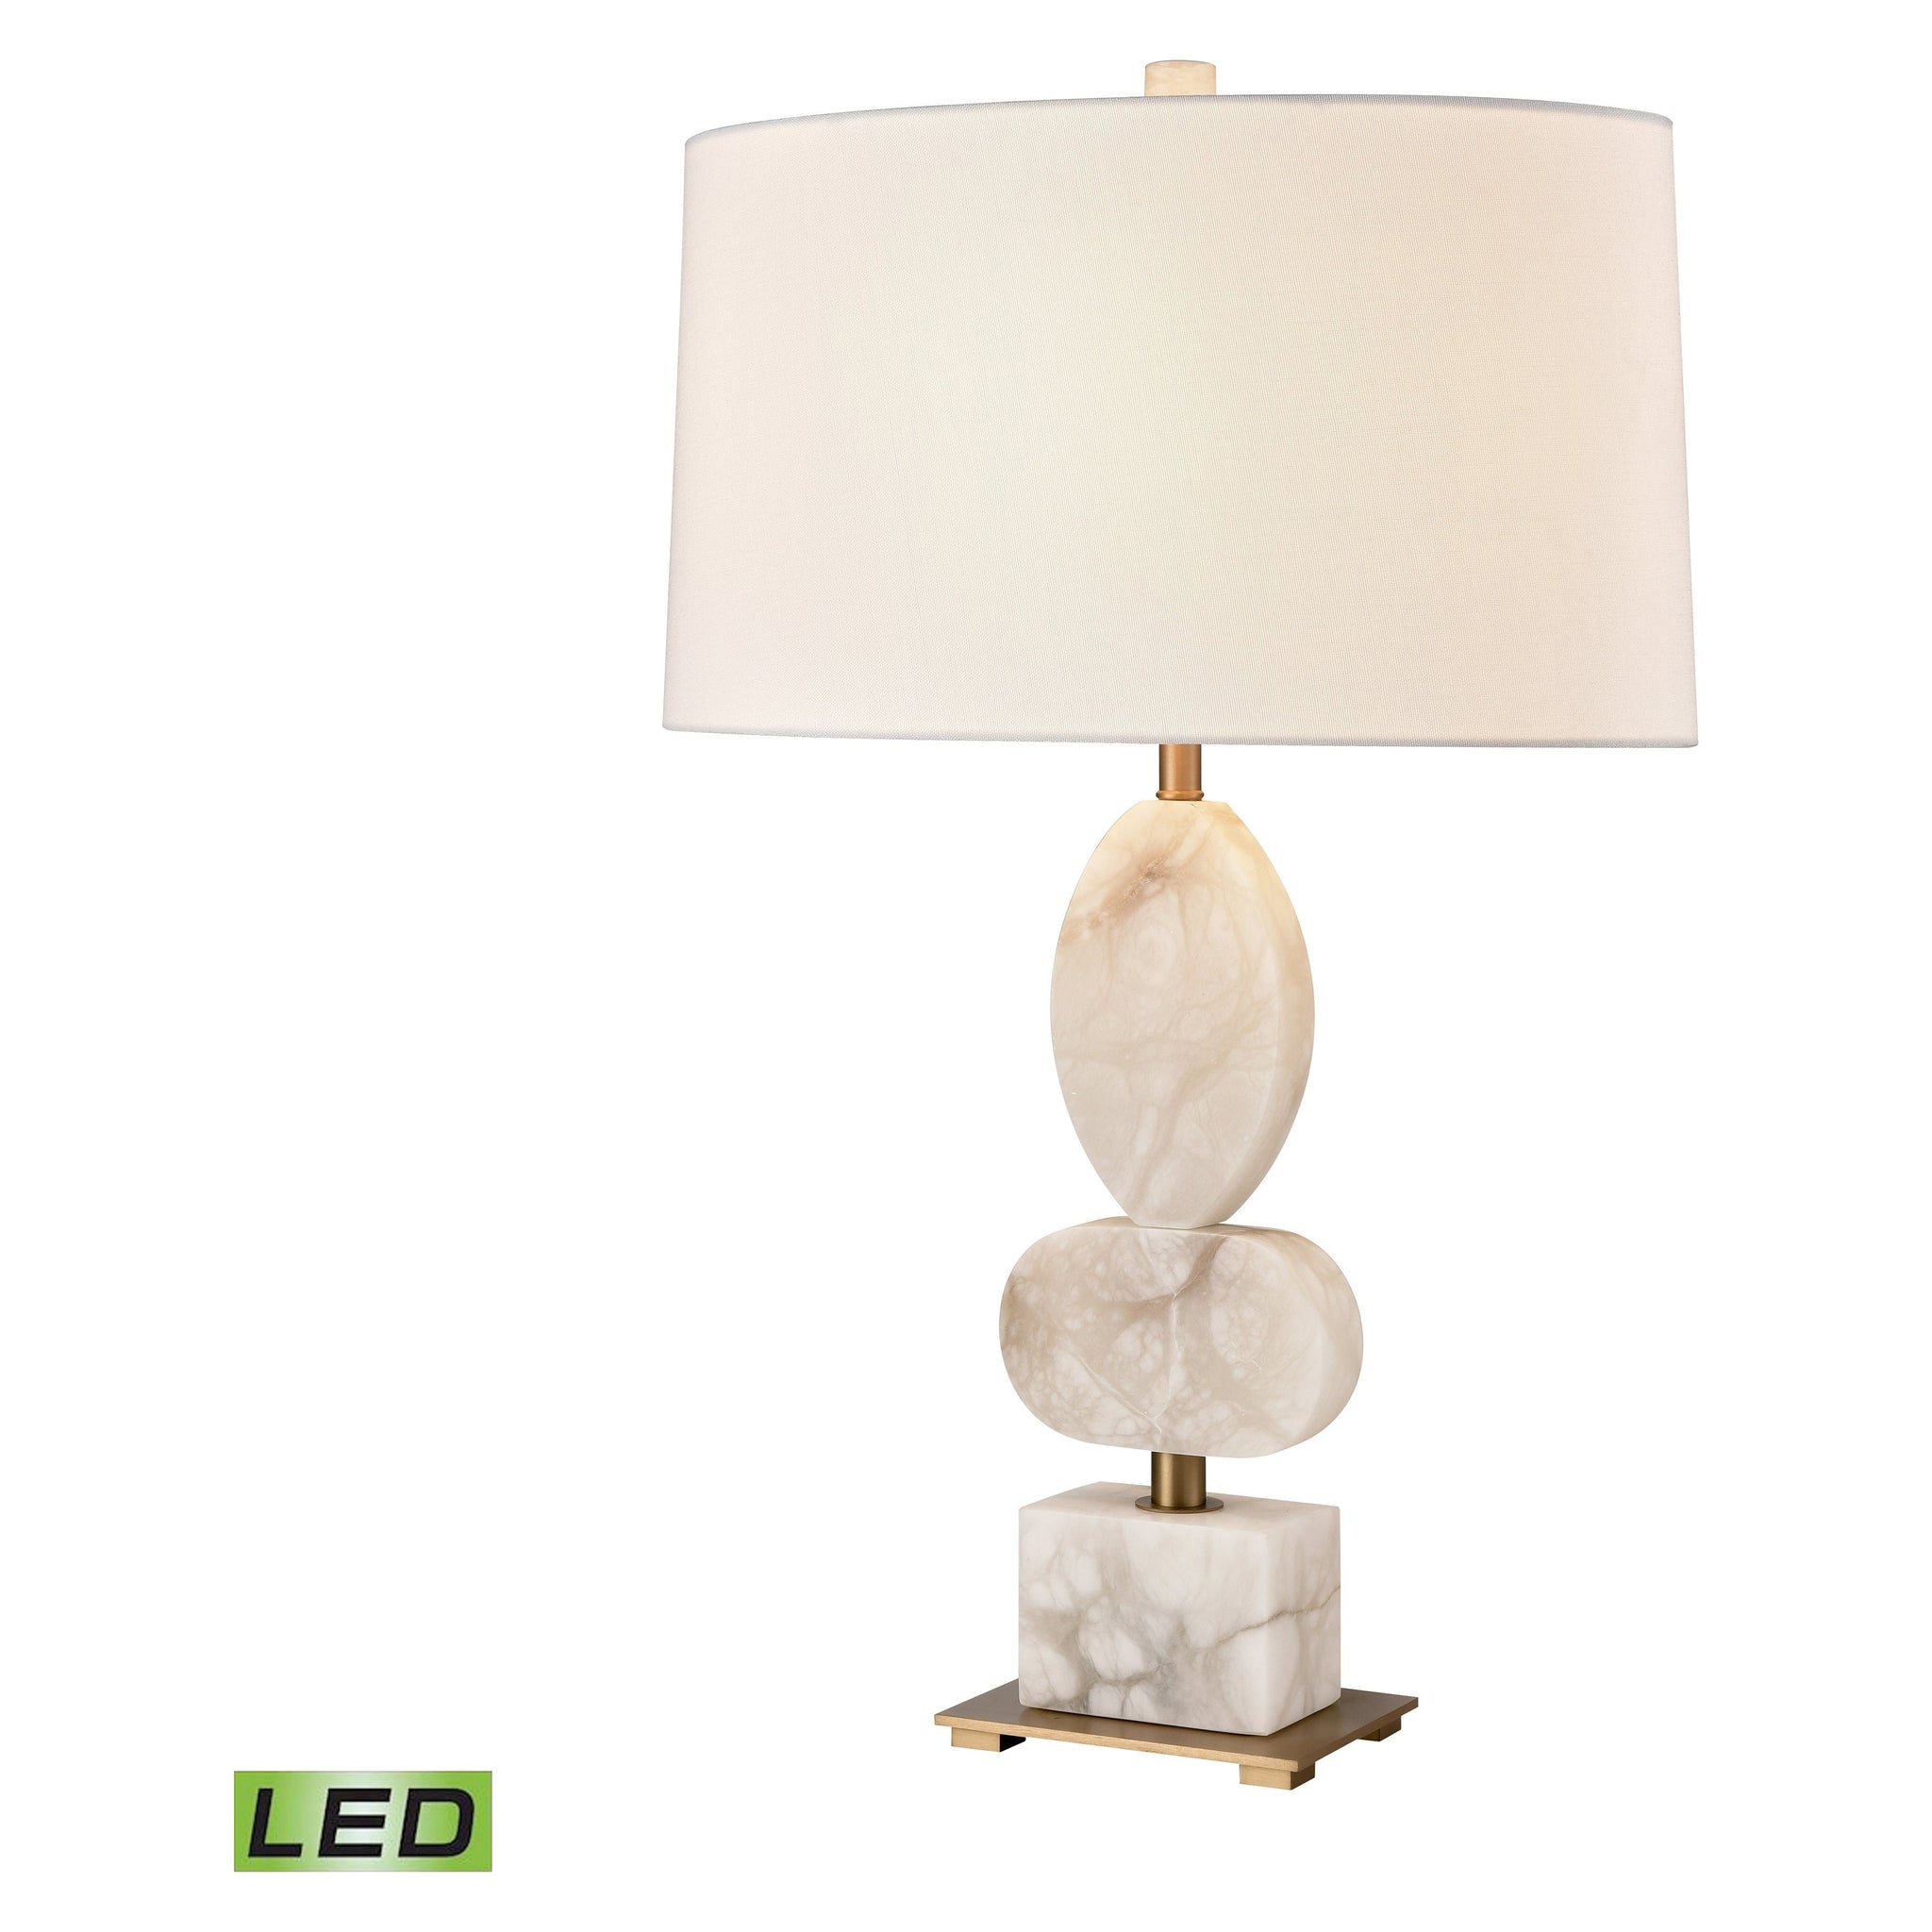 Calmness 30" High 1-Light Table Lamp